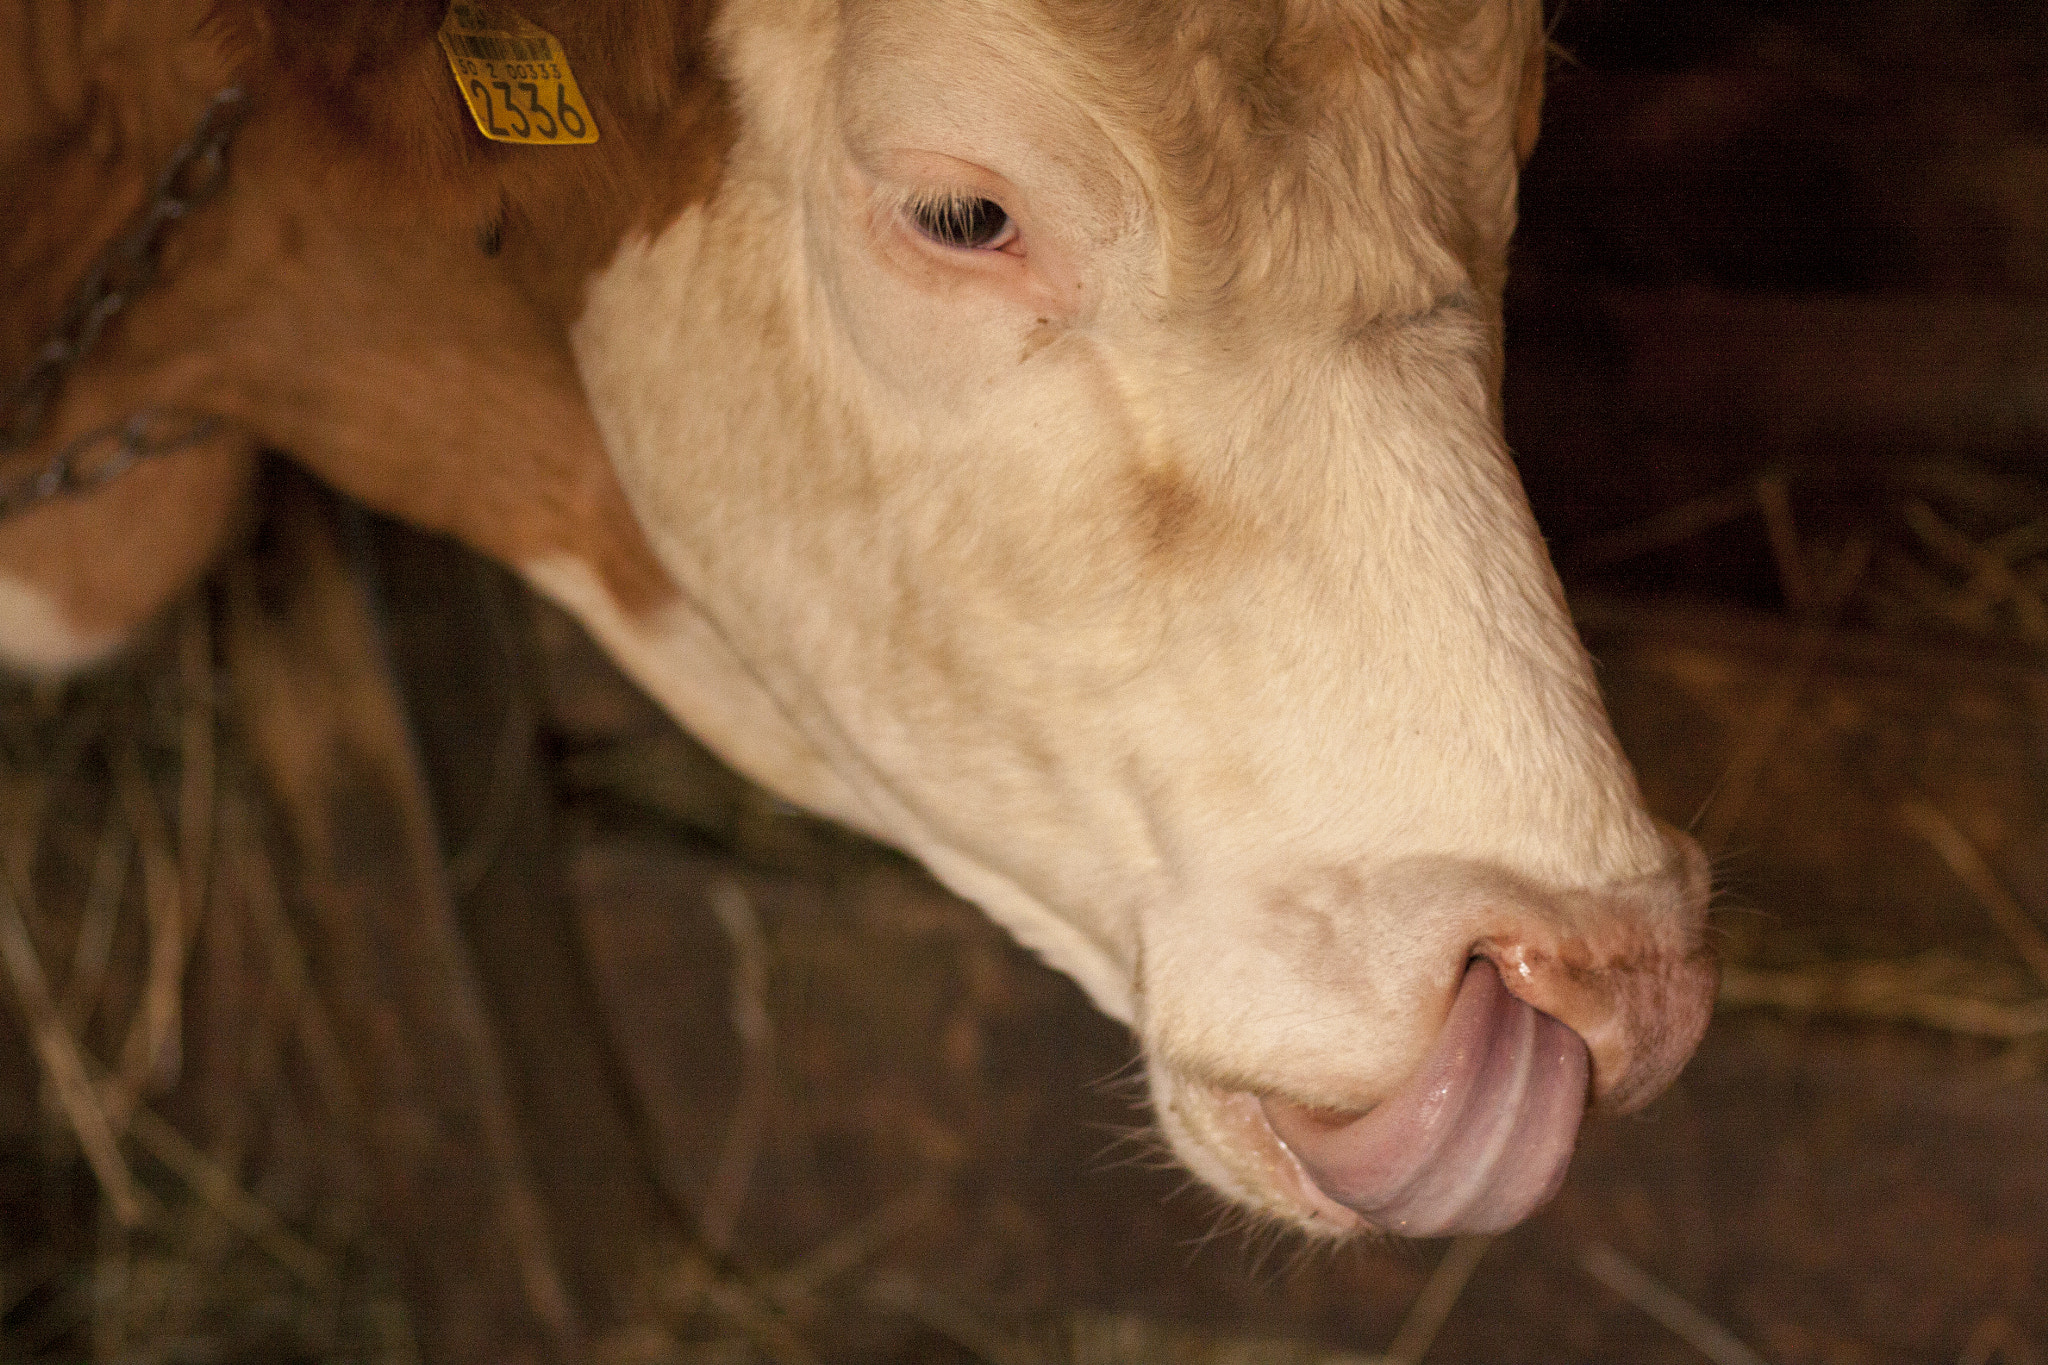 Canon EOS 50D sample photo. Cow tongue photography